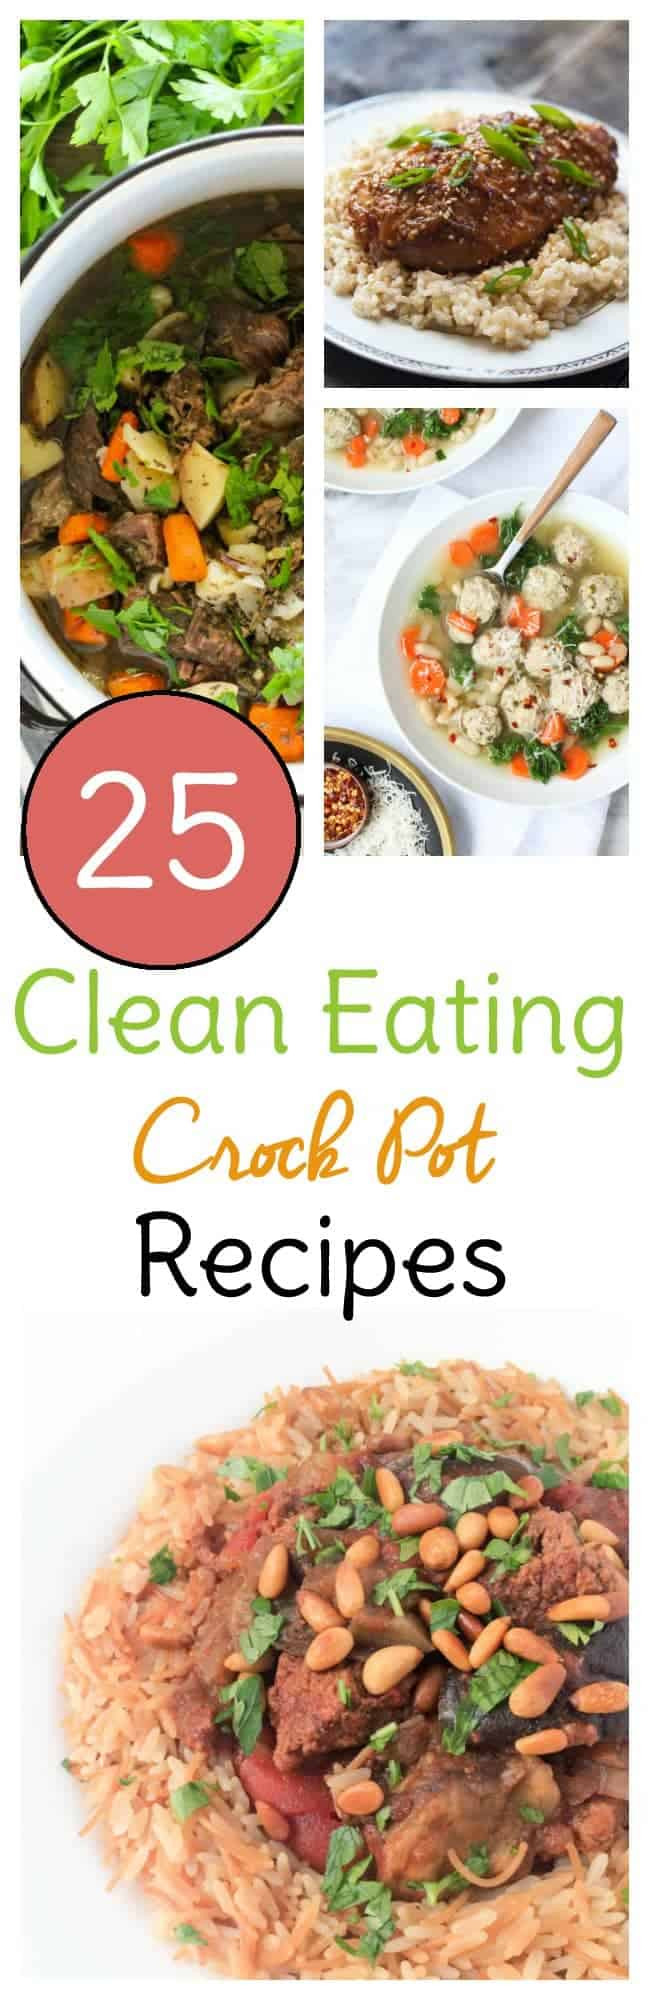 Clean Eating Crock Pot Recipes
 Clean Eating Crock Pot Recipes Sweet T Makes Three